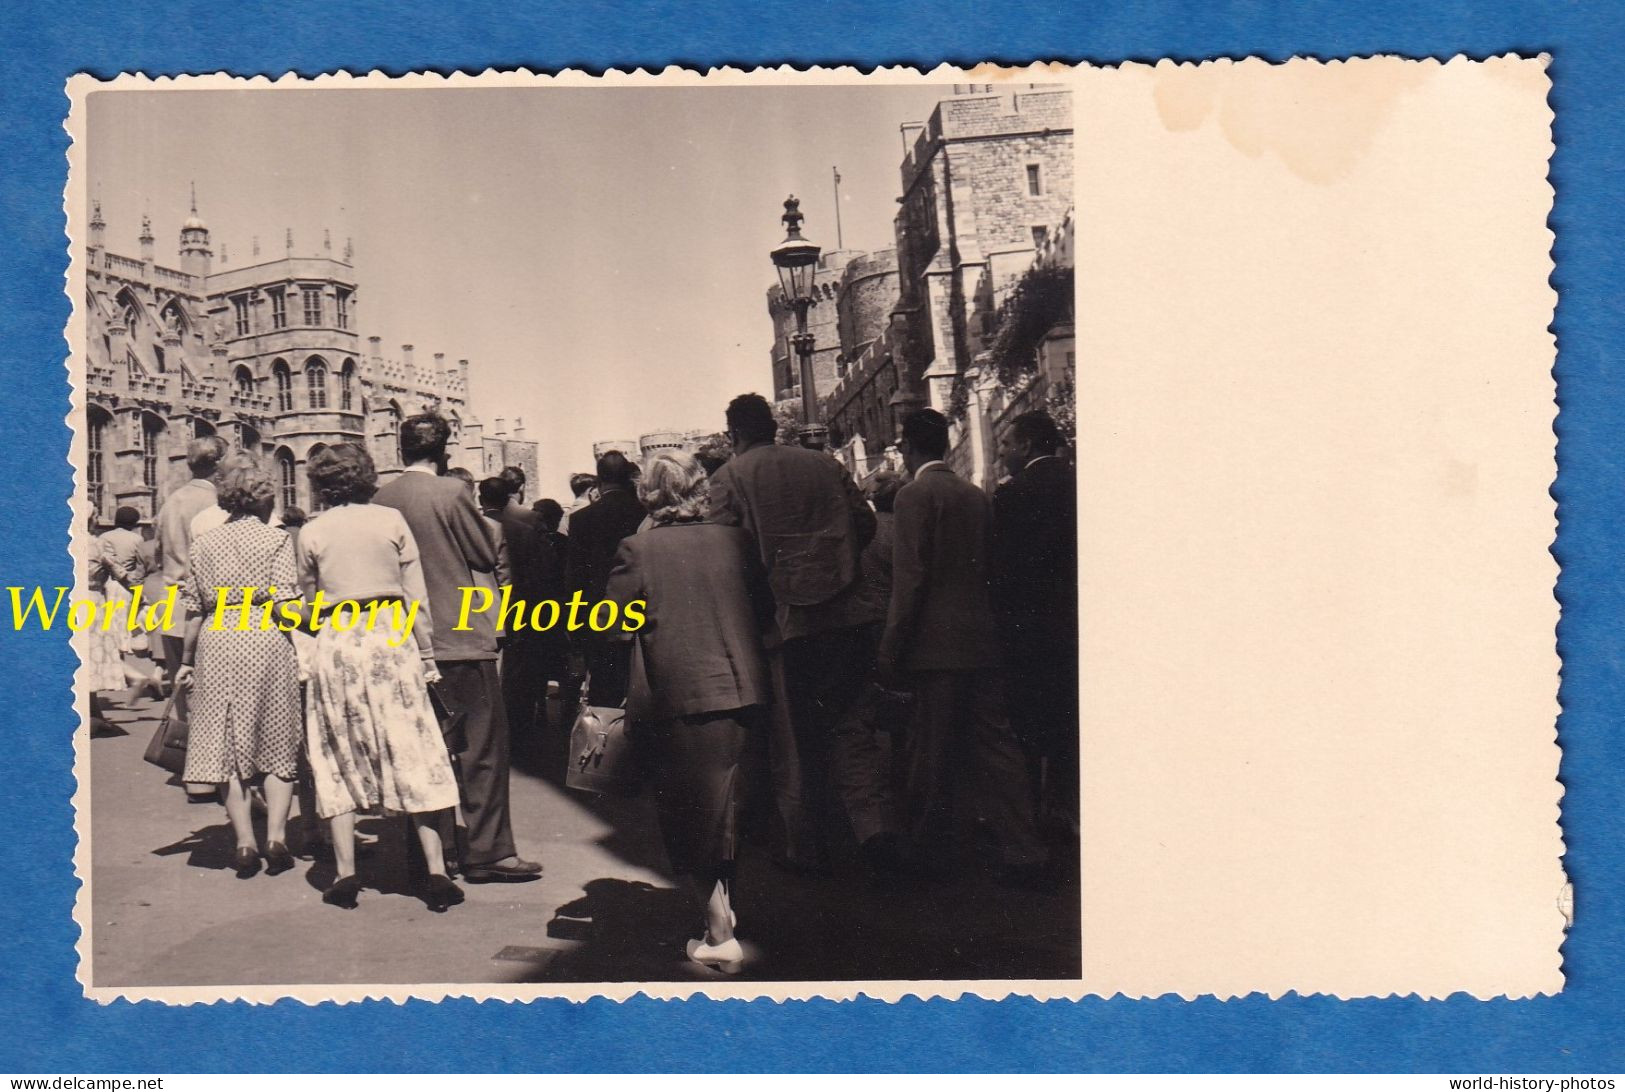 CPA Photo - WINDSOR - Groupe De Touriste Visitant Le Palais Ducal - 20 Juillet 1954 - Homme Femme Mode Castle - Windsor